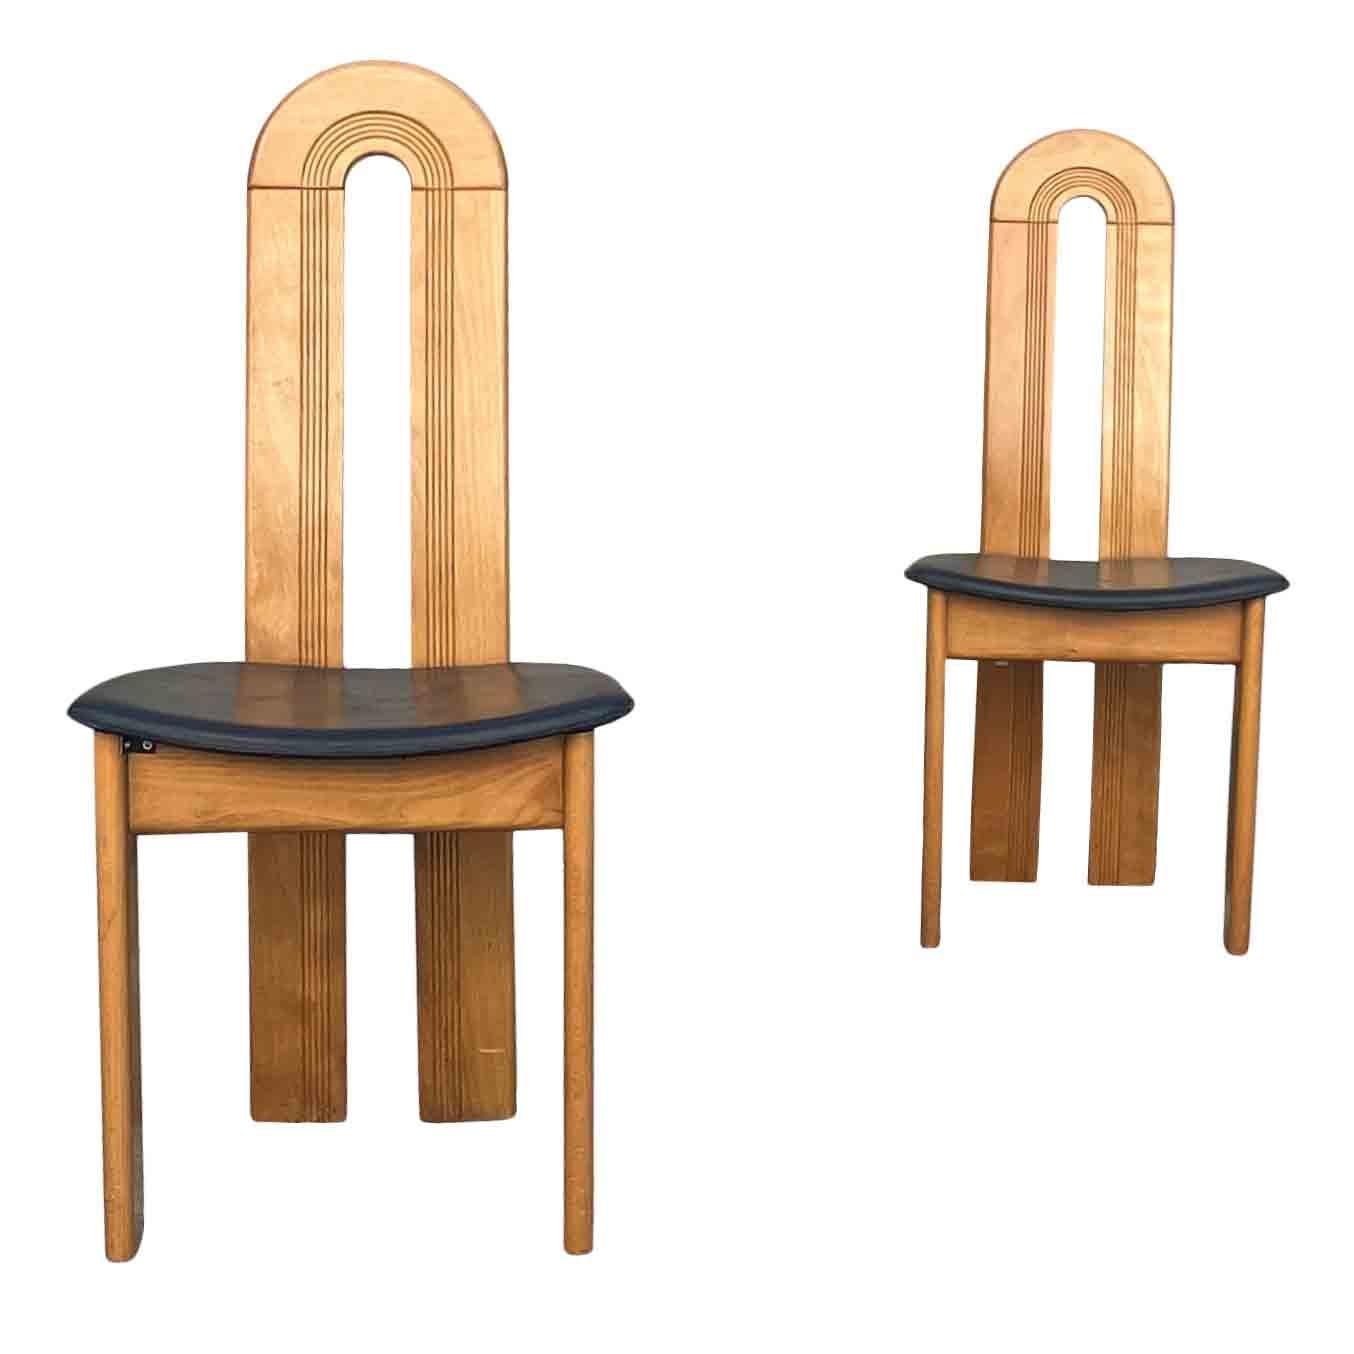 Moderne italienische Design-Esszimmerstühle aus Buche und Leder, 1980er Jahre, 6-teilig (Ende des 20. Jahrhunderts)